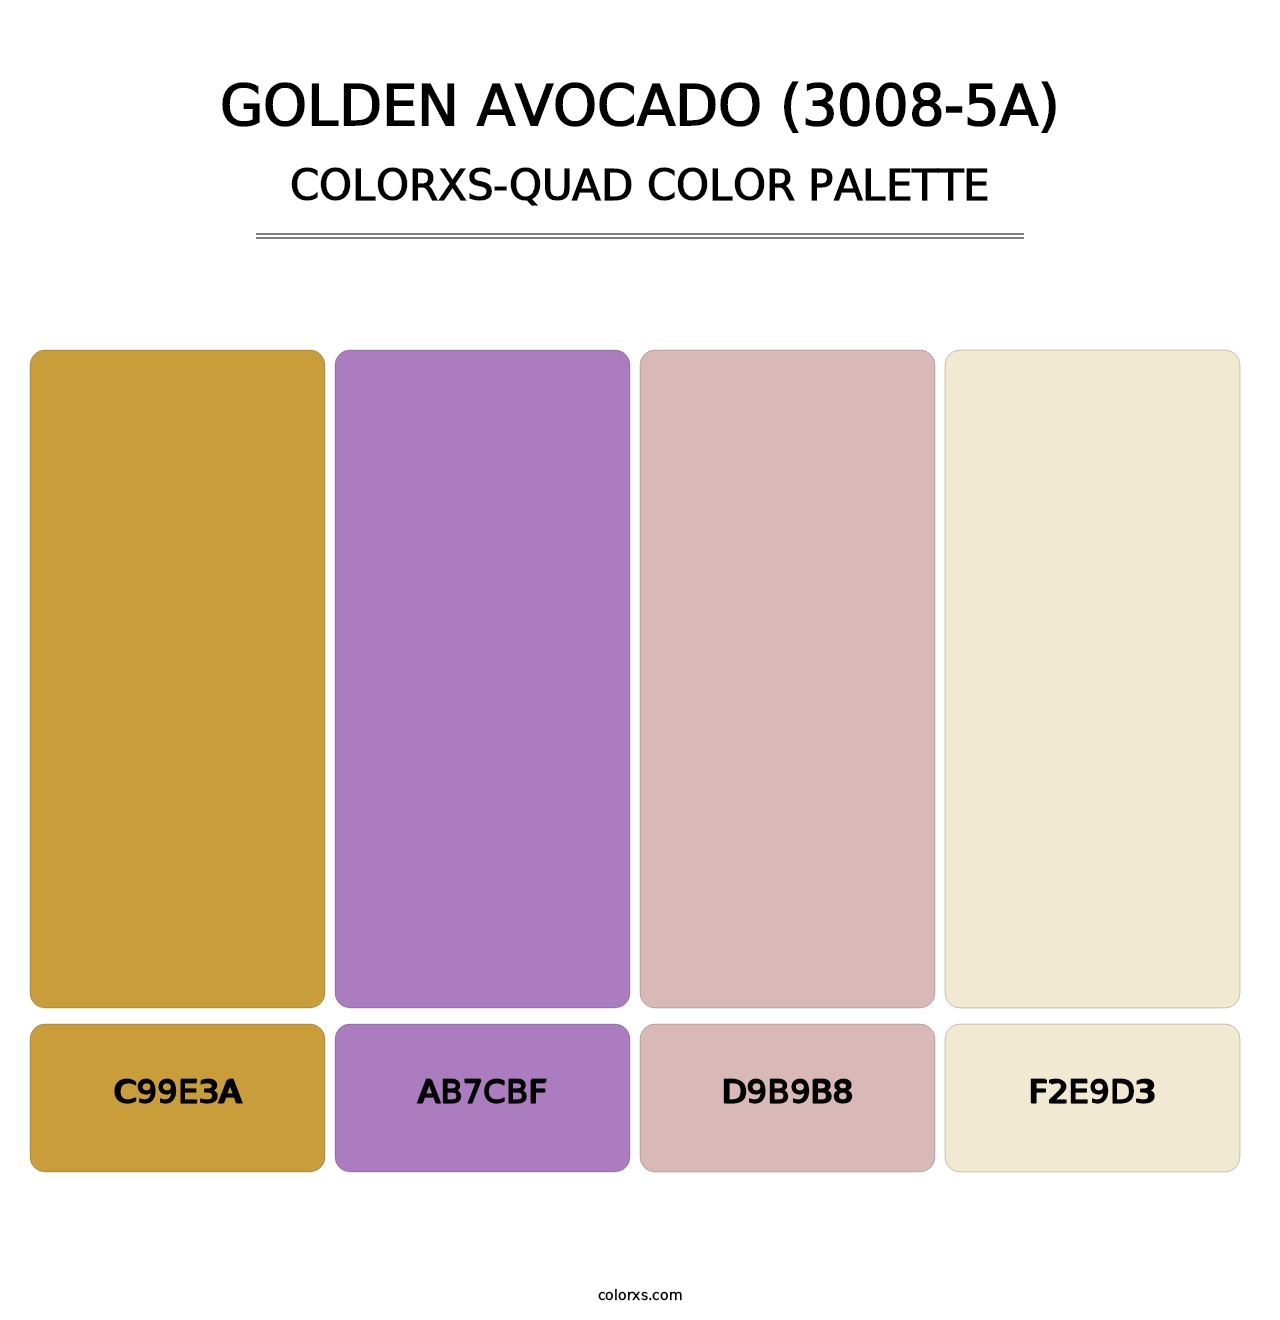 Golden Avocado (3008-5A) - Colorxs Quad Palette